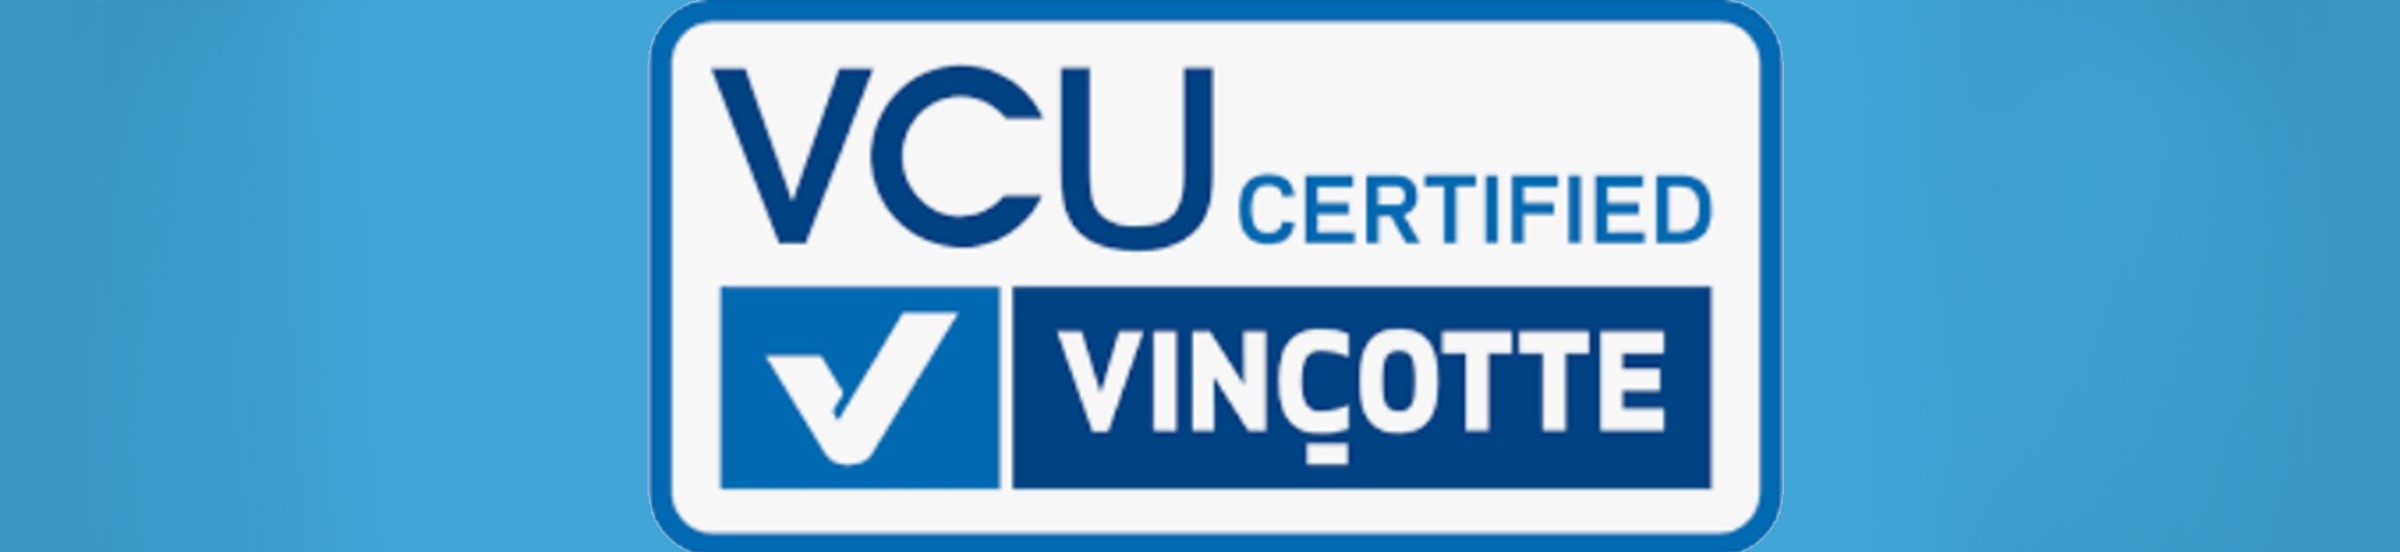 Découvrez comment Unique se distingue avec le certificat VCU, la norme de sécurité pour les agences de placement